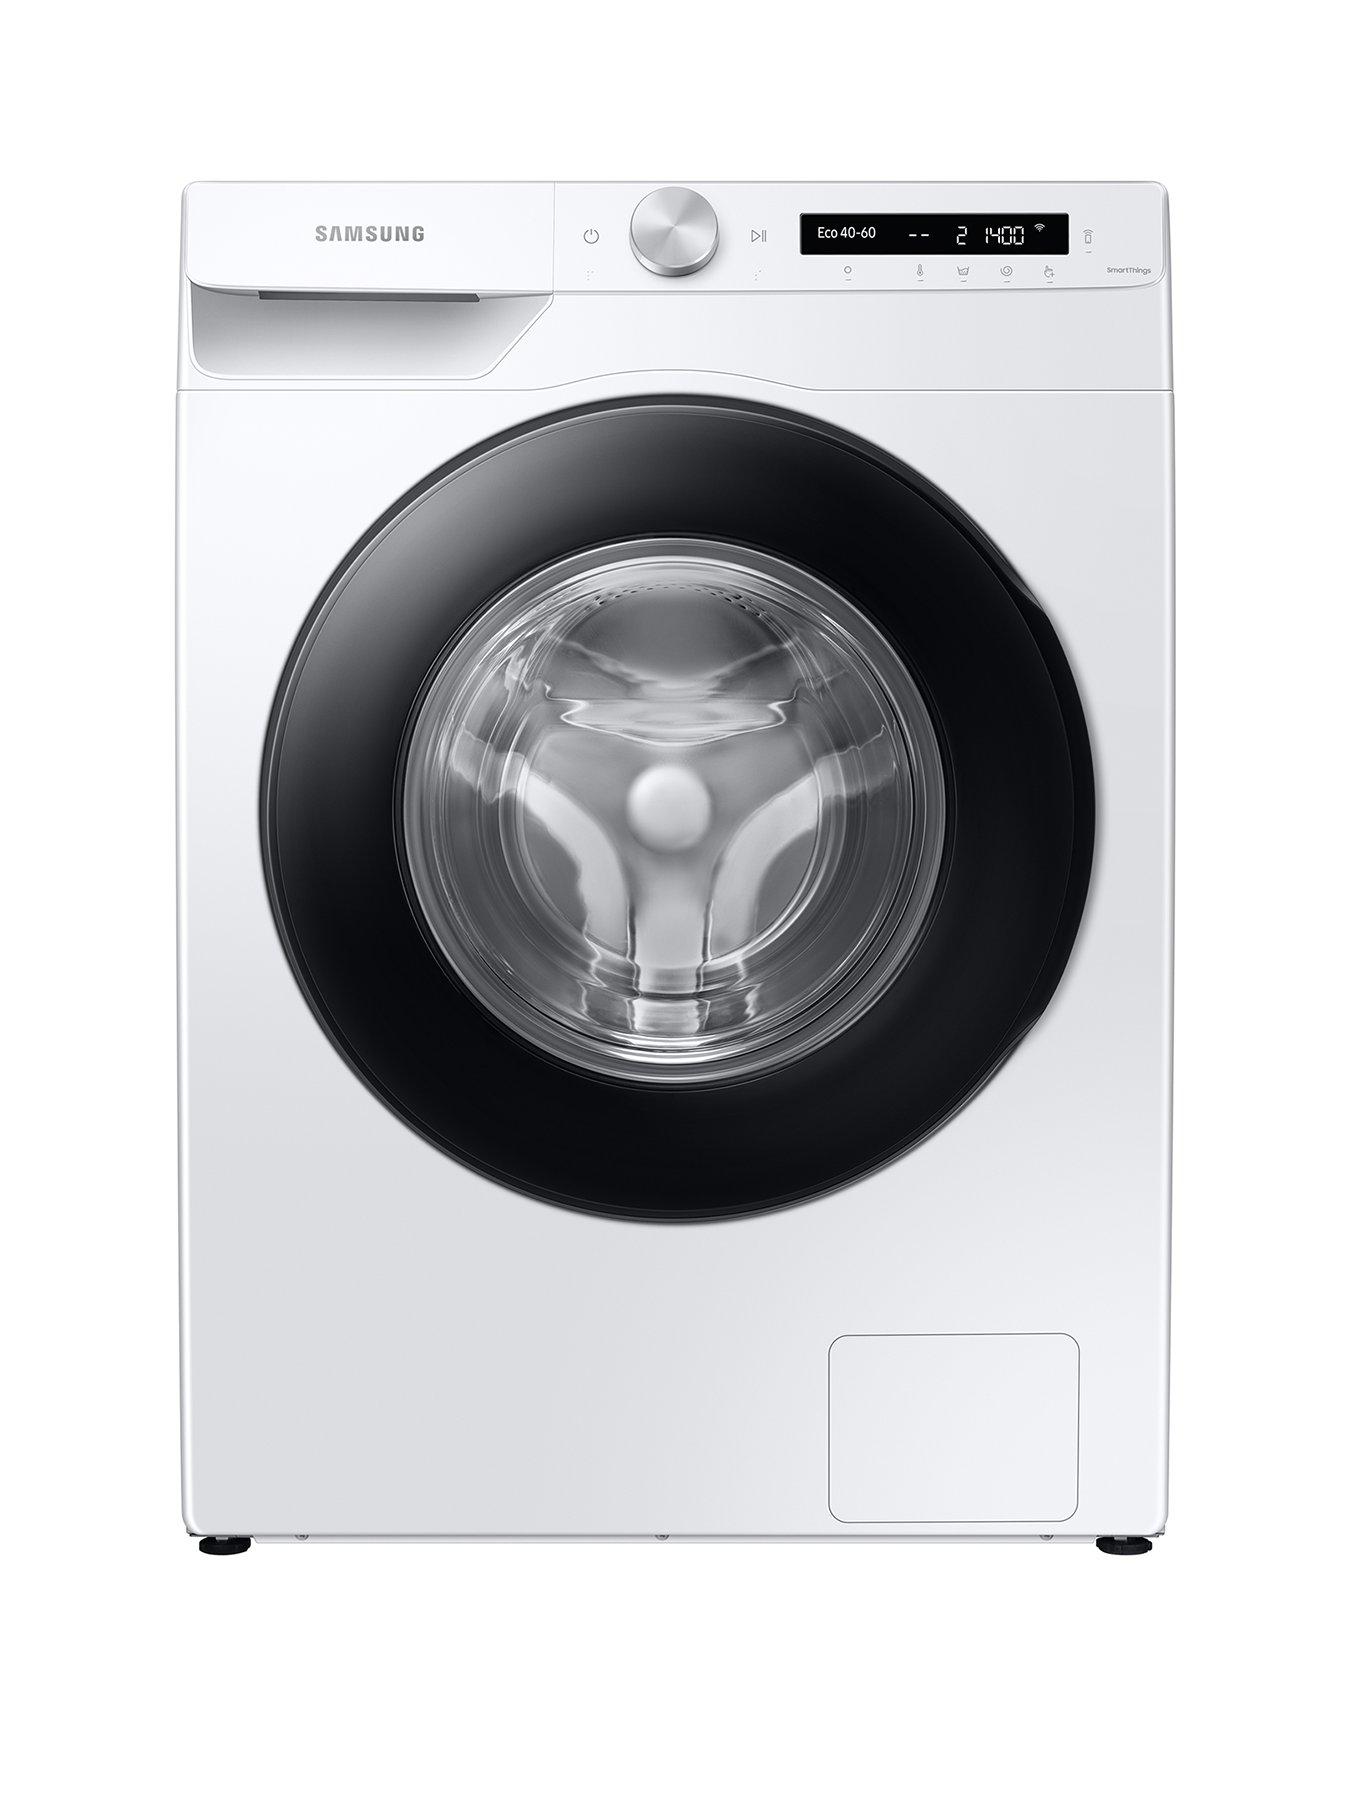 Underwire in a Washing Machine - eSpares